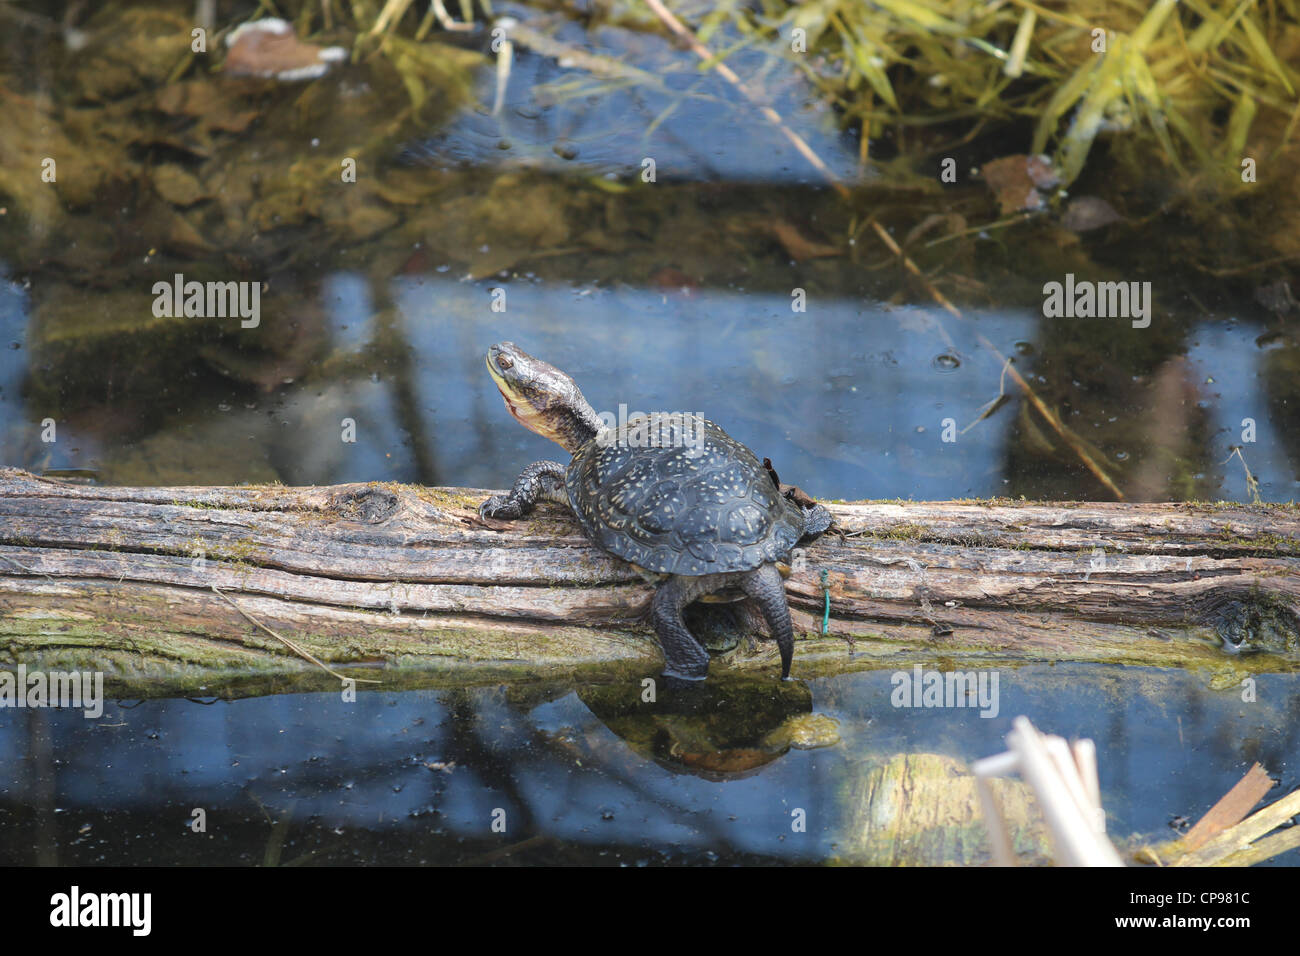 North American Reptile in nature Stock Photo